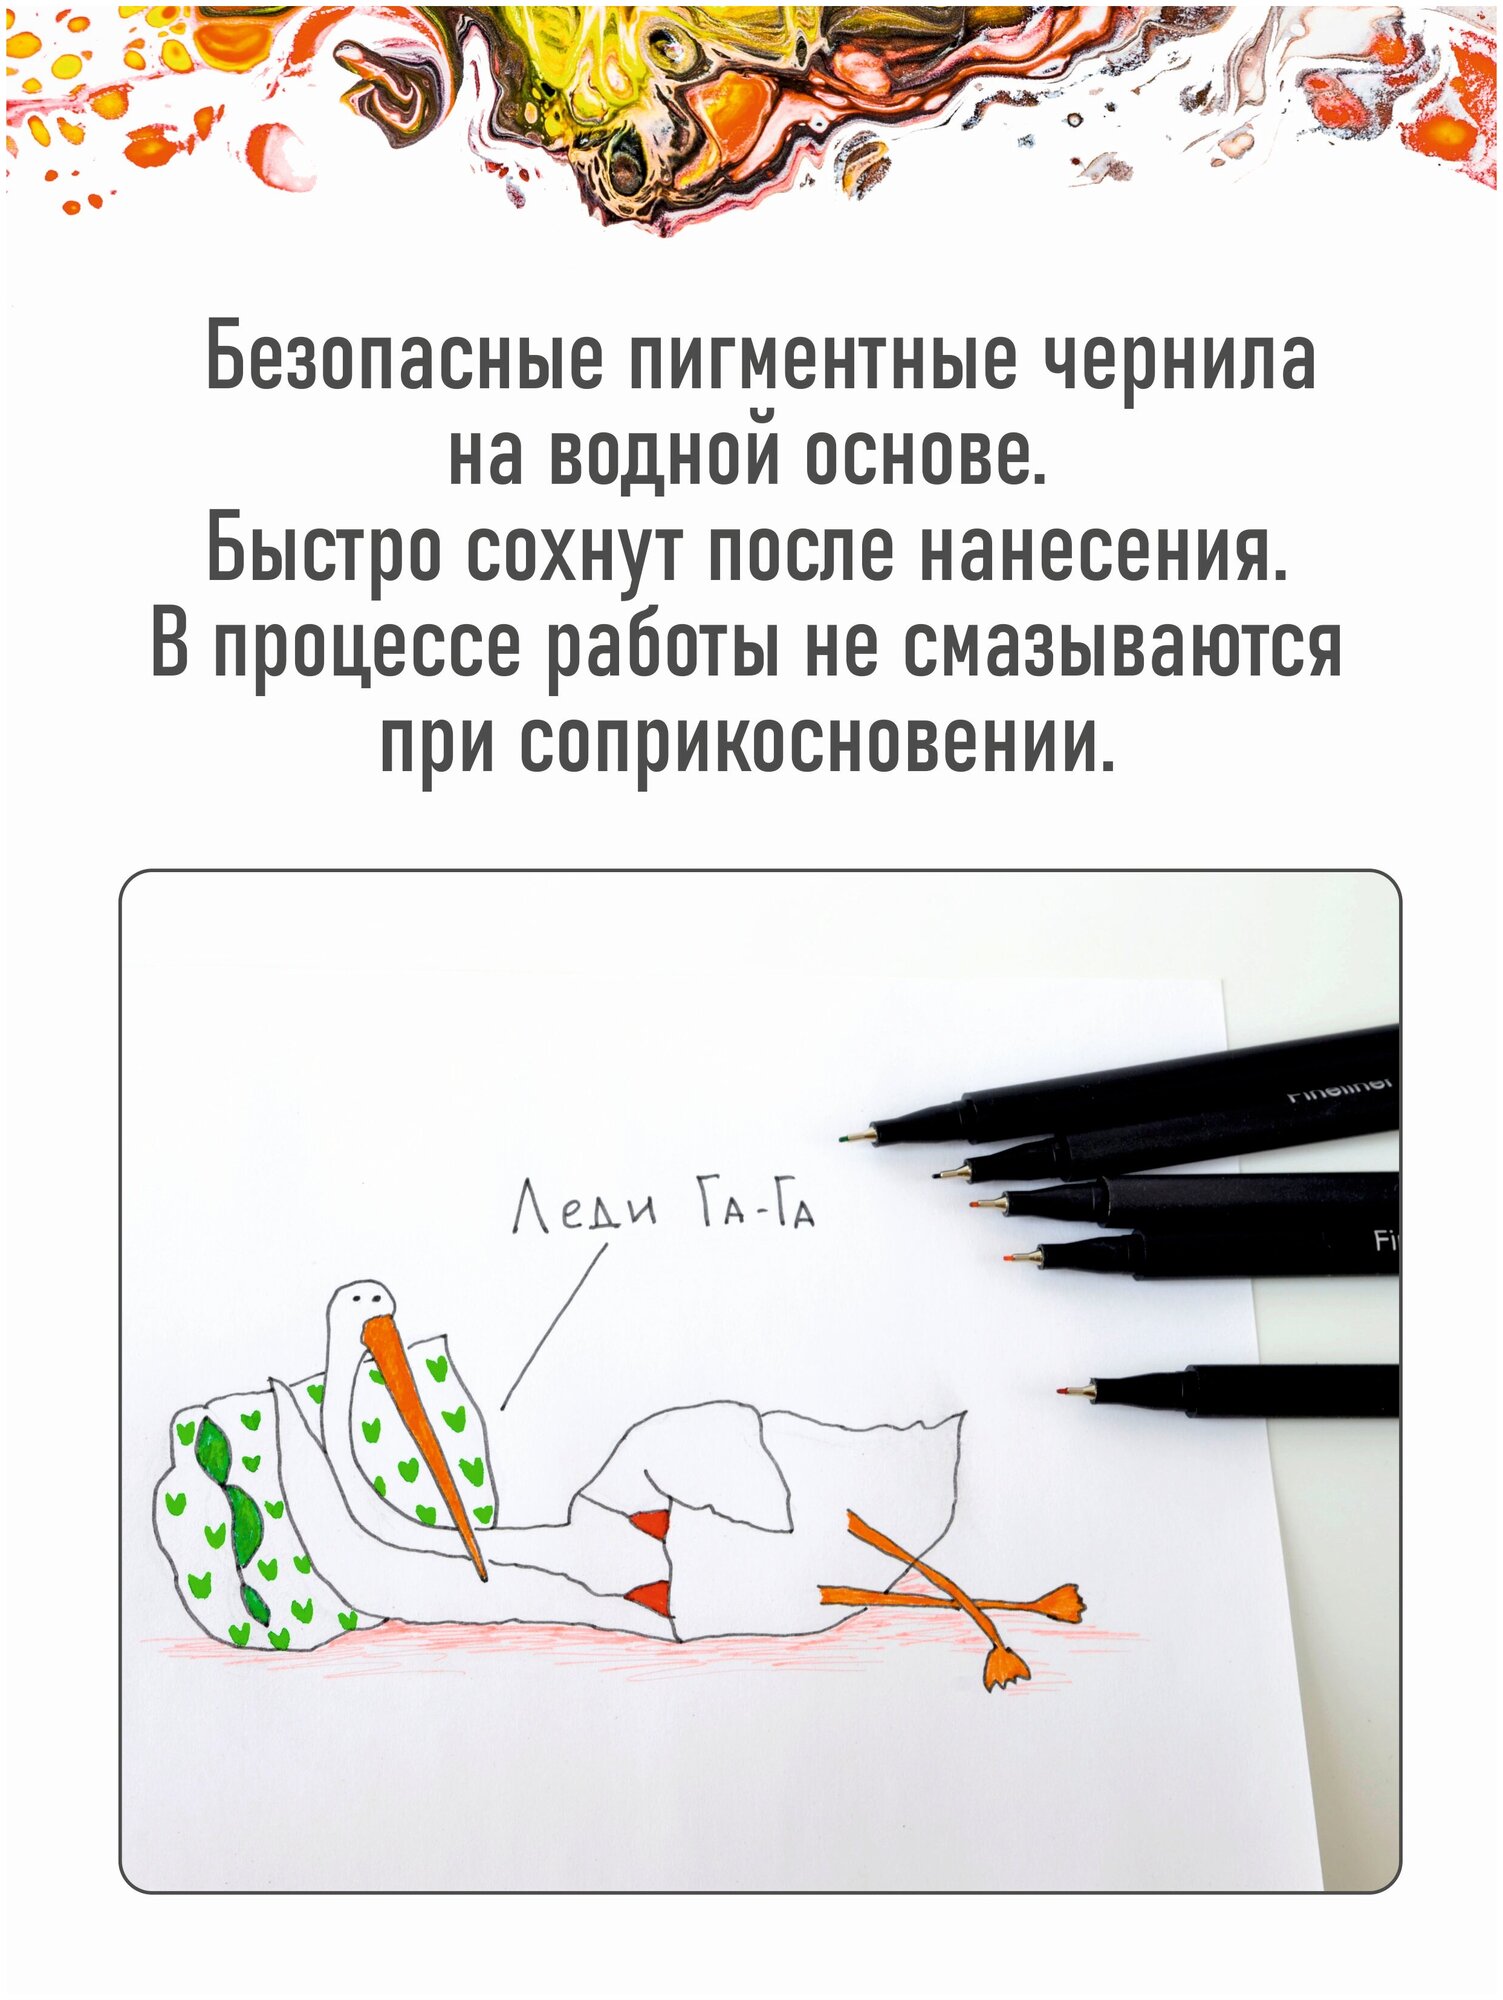 Набор цветных линеров (капиллярные ручки) для скетчинга, письма, черчения, рисования, 12 цветов.